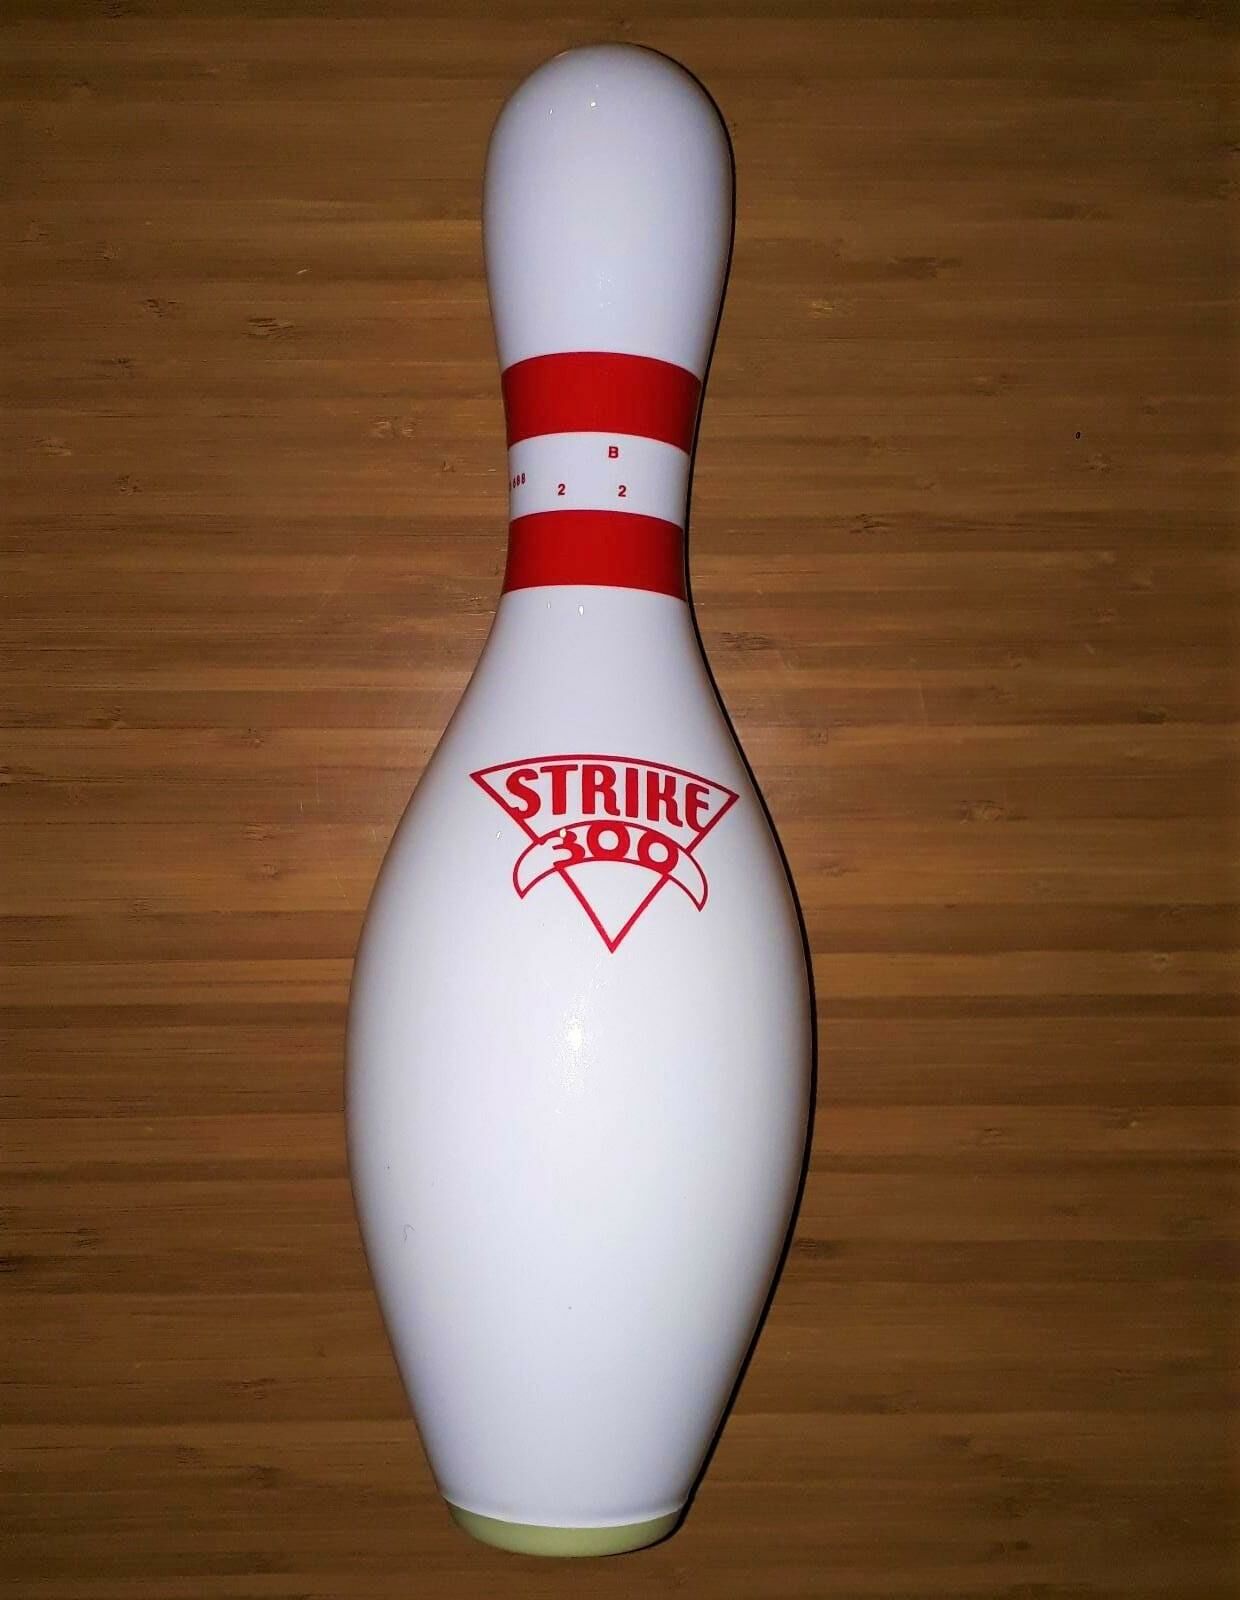 Bowling Pin, Adet Labut, Strike300